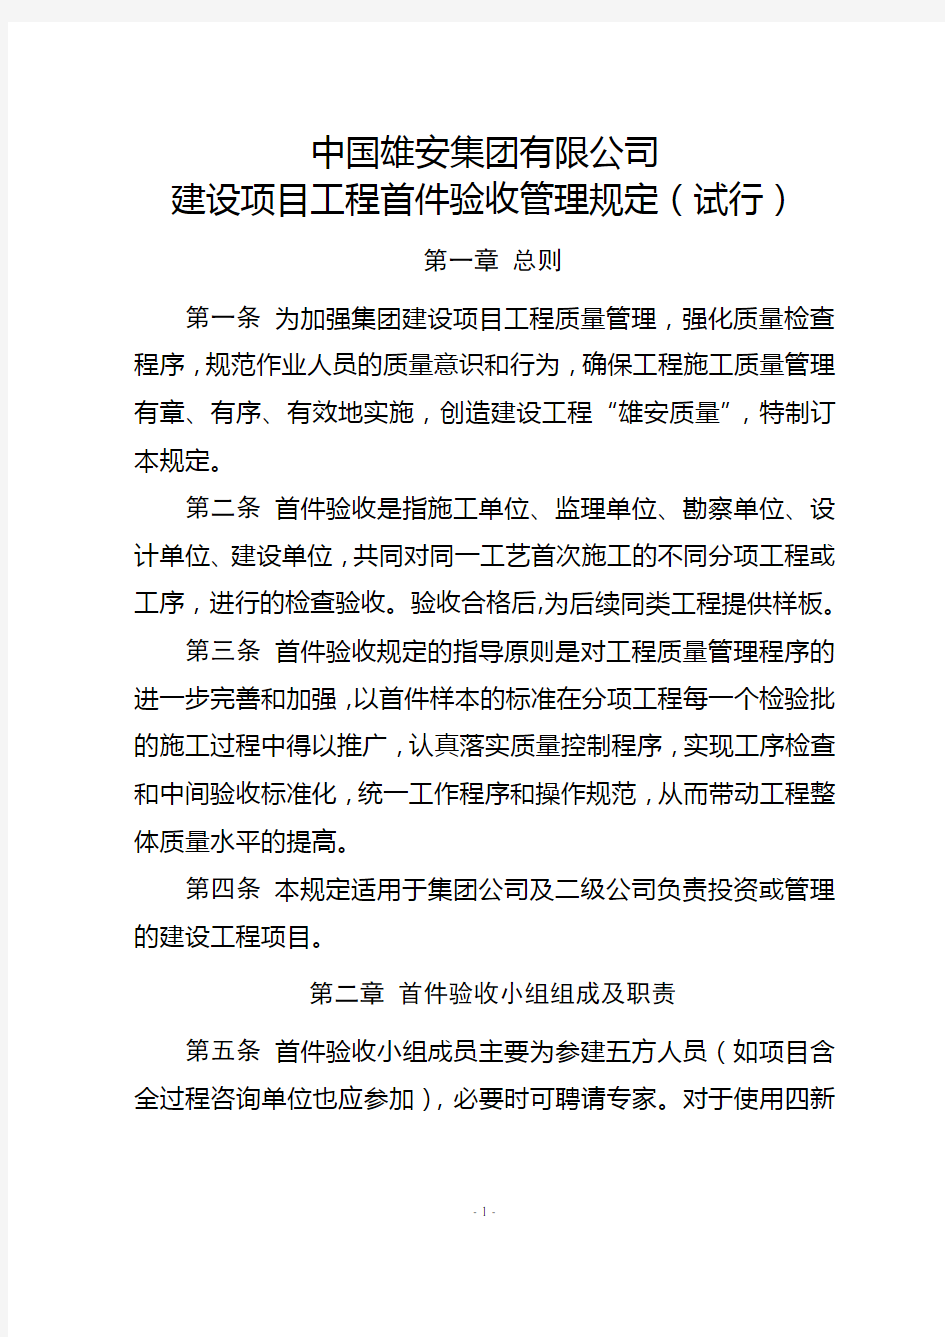 中国雄安集团首件验收管理规定